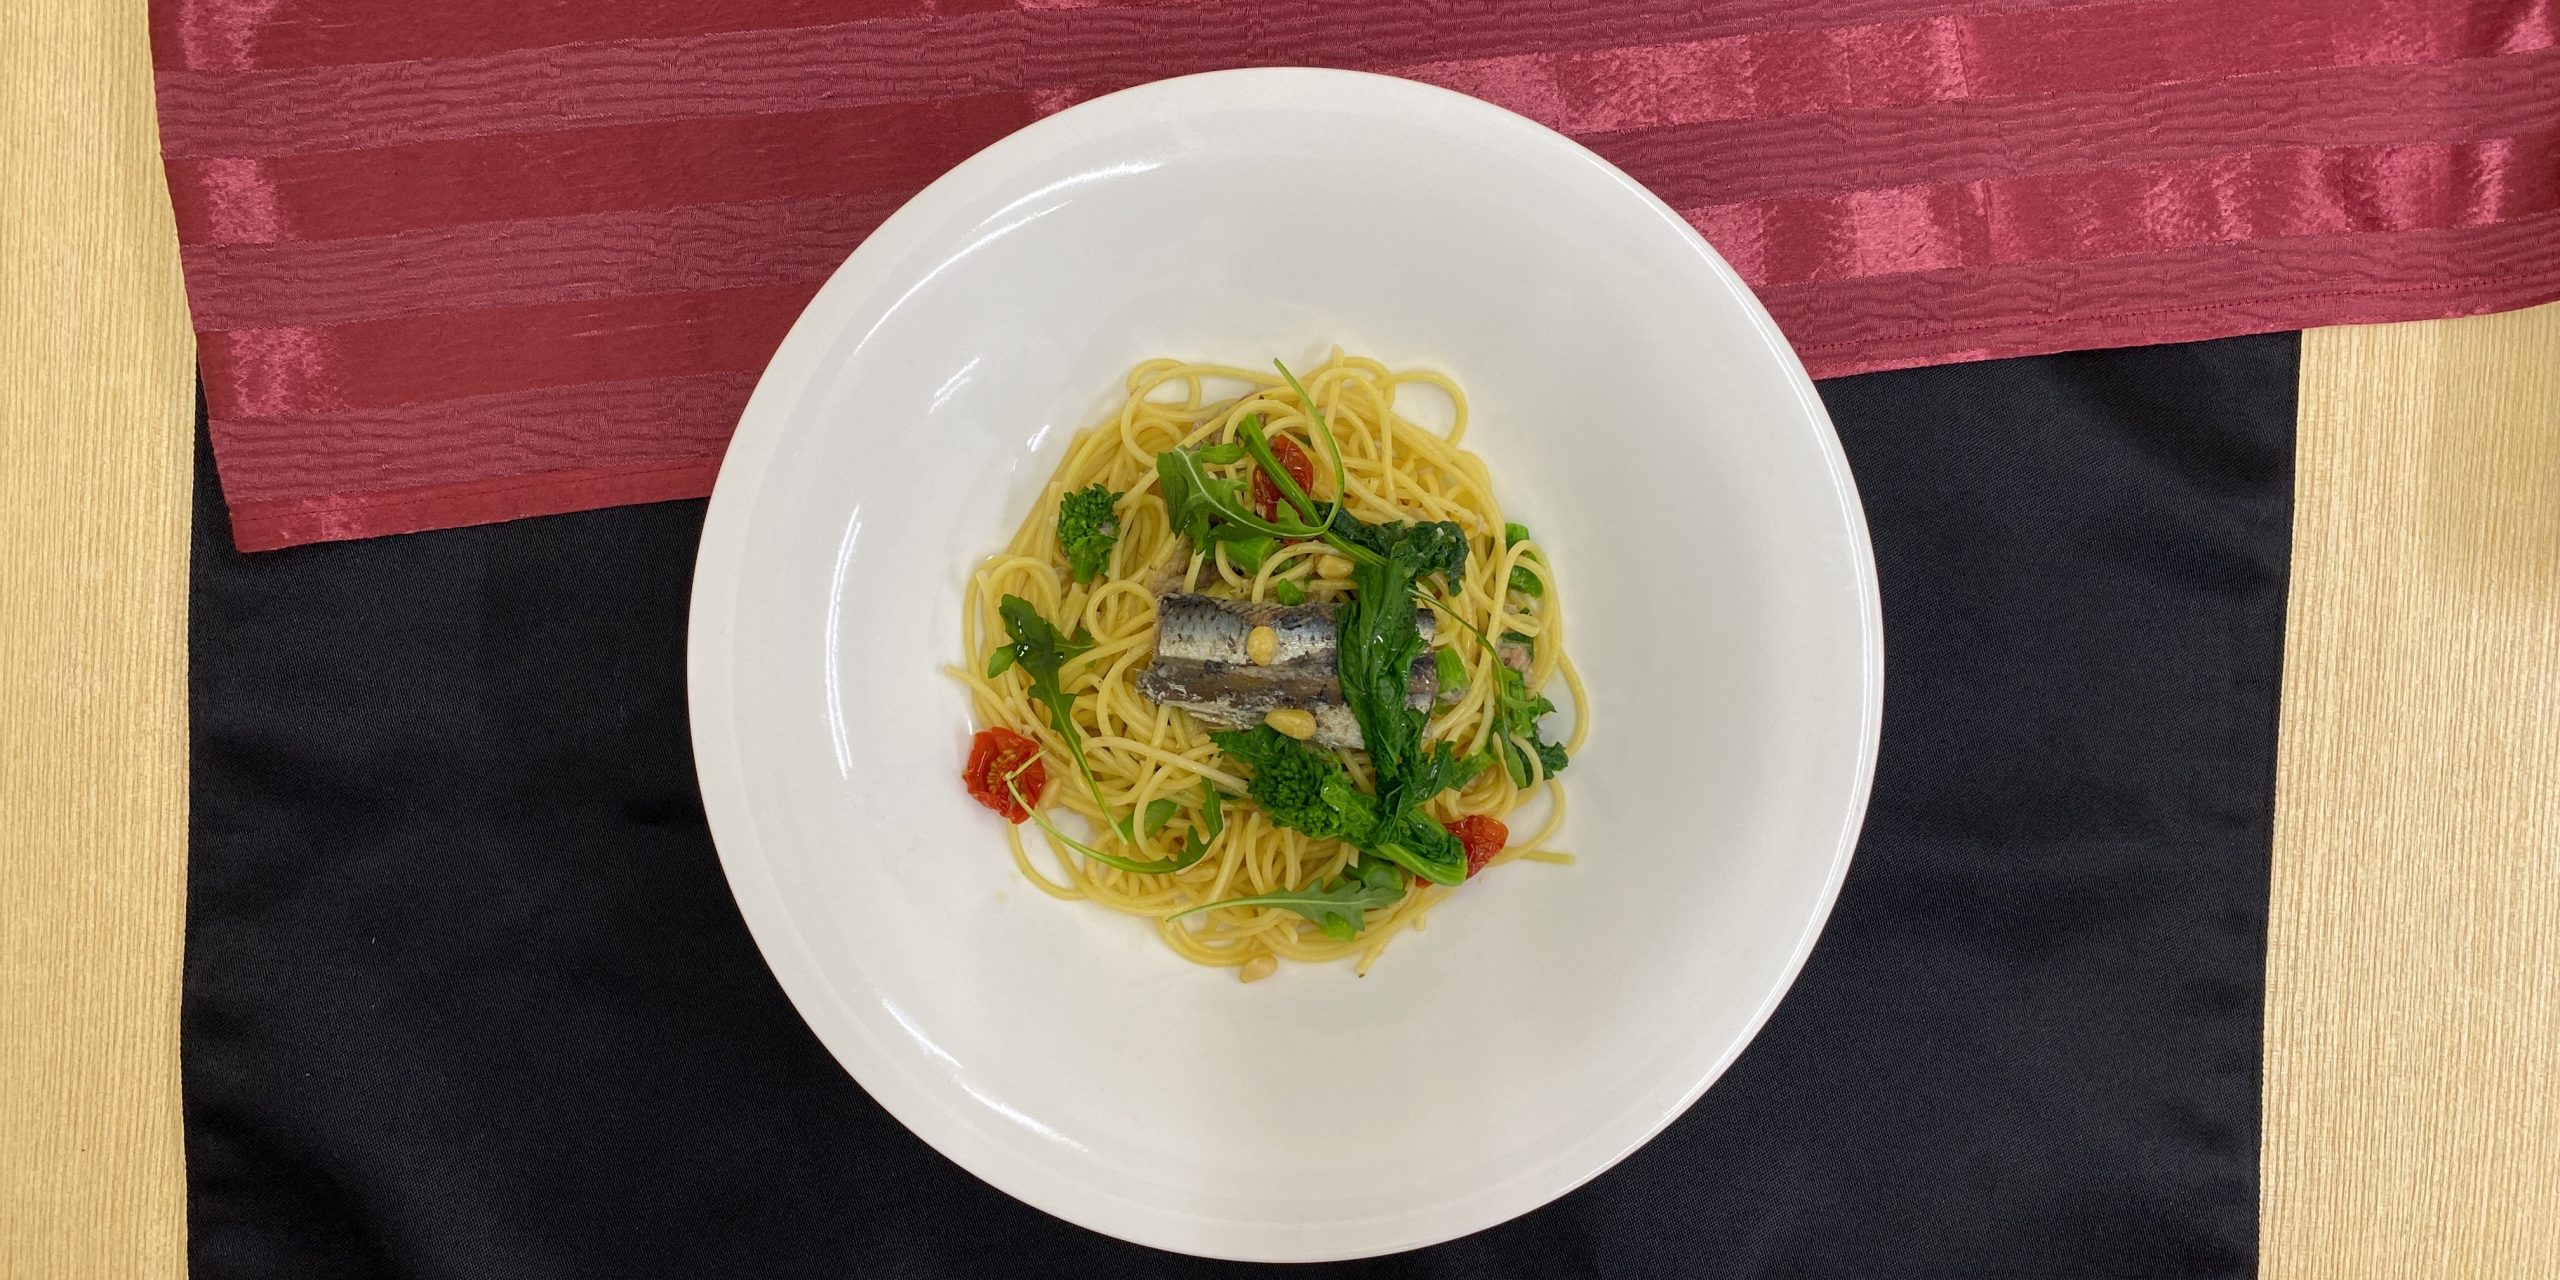 スパゲッティ イワシのコンフィと菜の花ペペロンチーノ 海の恵み 食の底力 Japan 公式レシピサイト